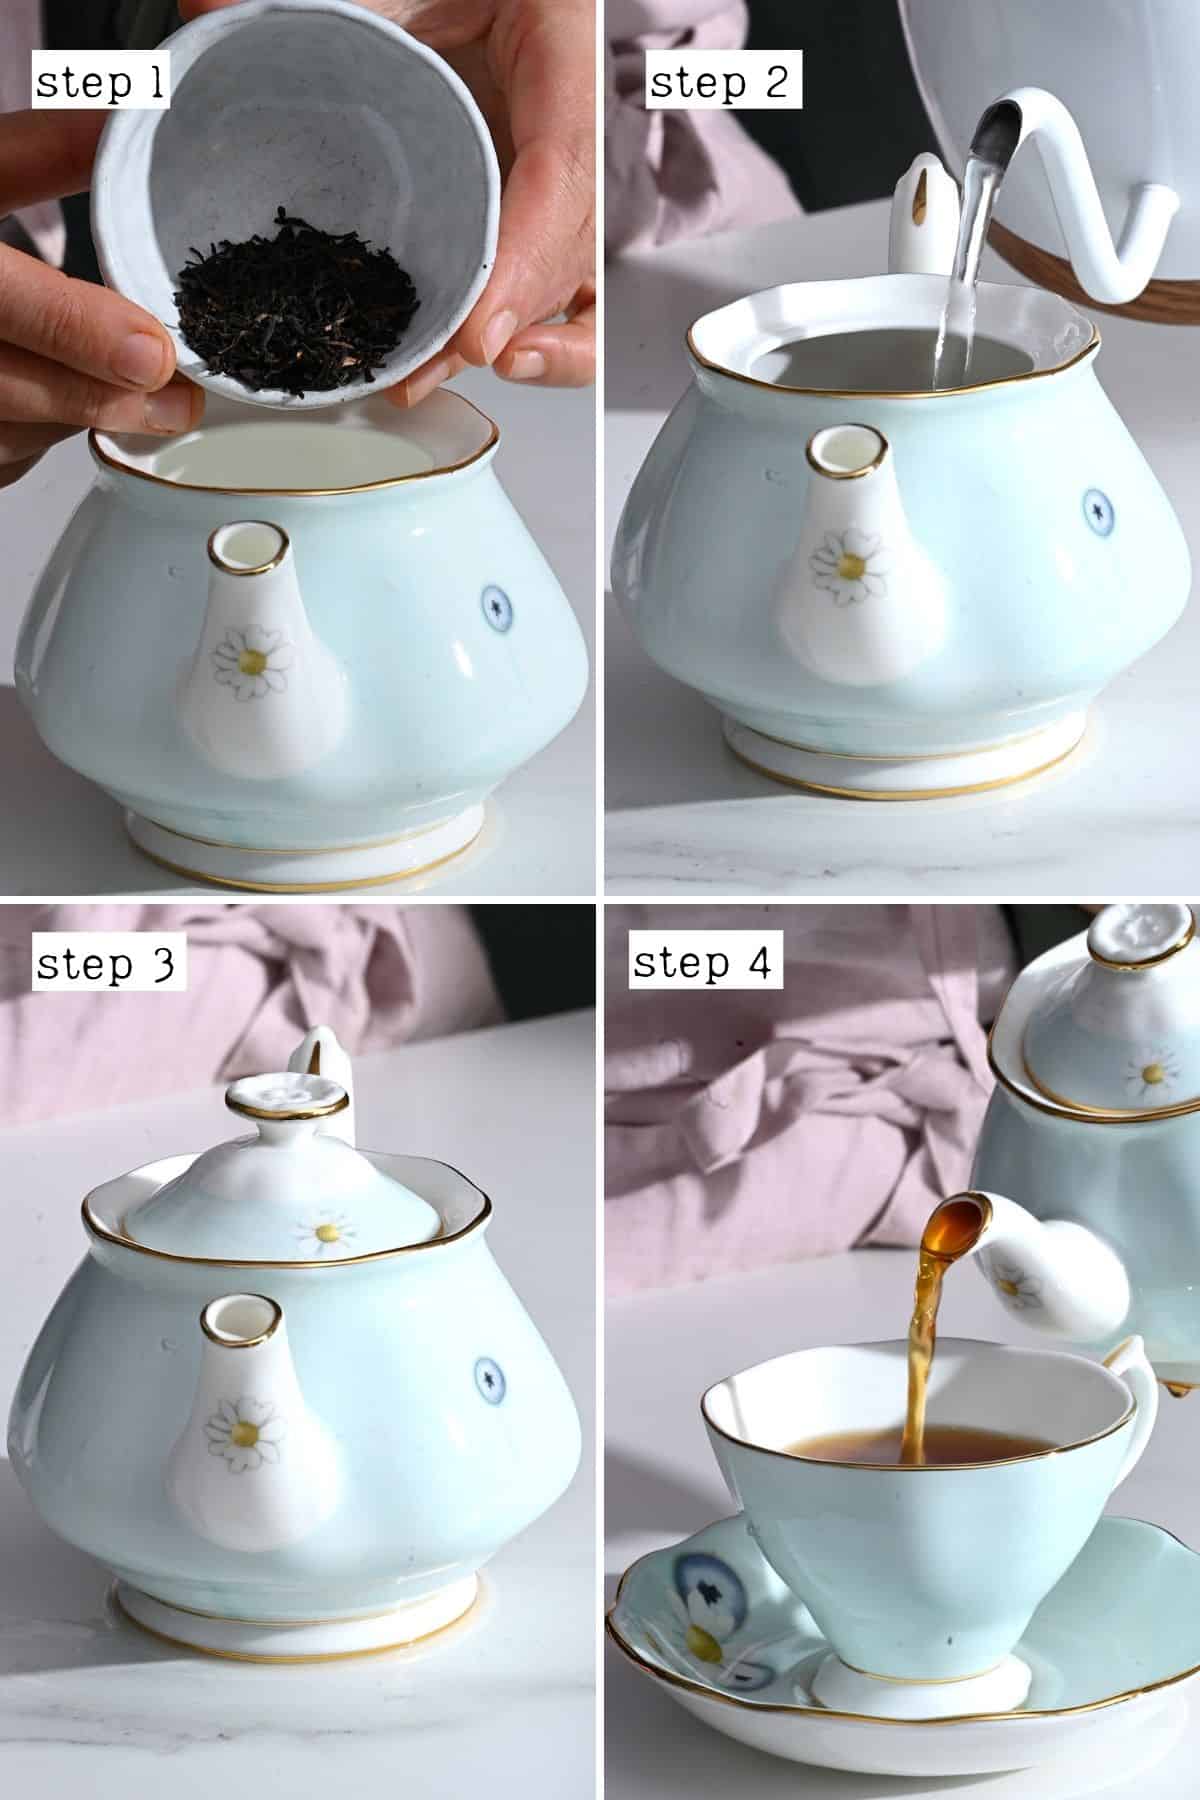 Steps for making milk tea